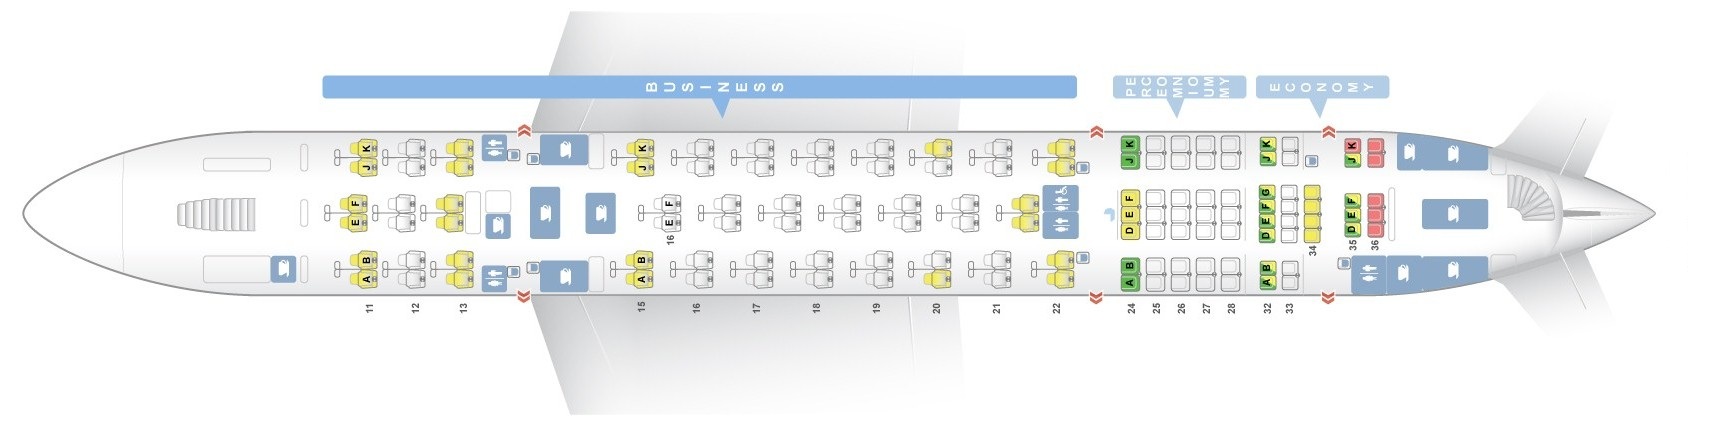 Qantas Airbus A380 Seating Chart